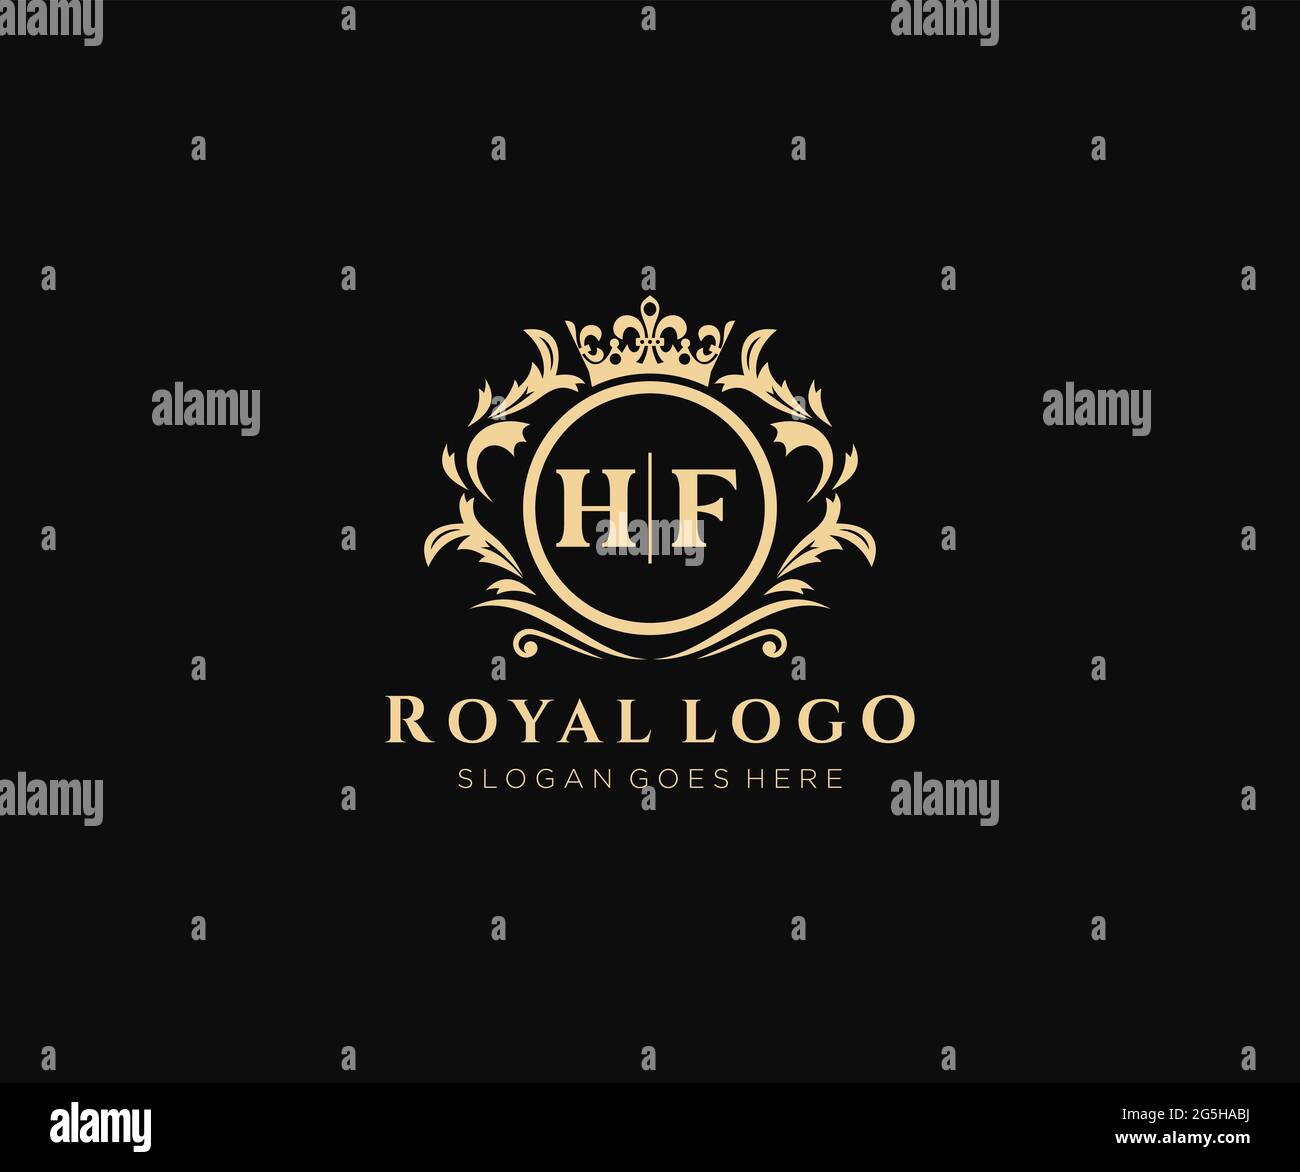 HF Letter Luxurious Brand Logo Template, for Restaurant, Royalty ...